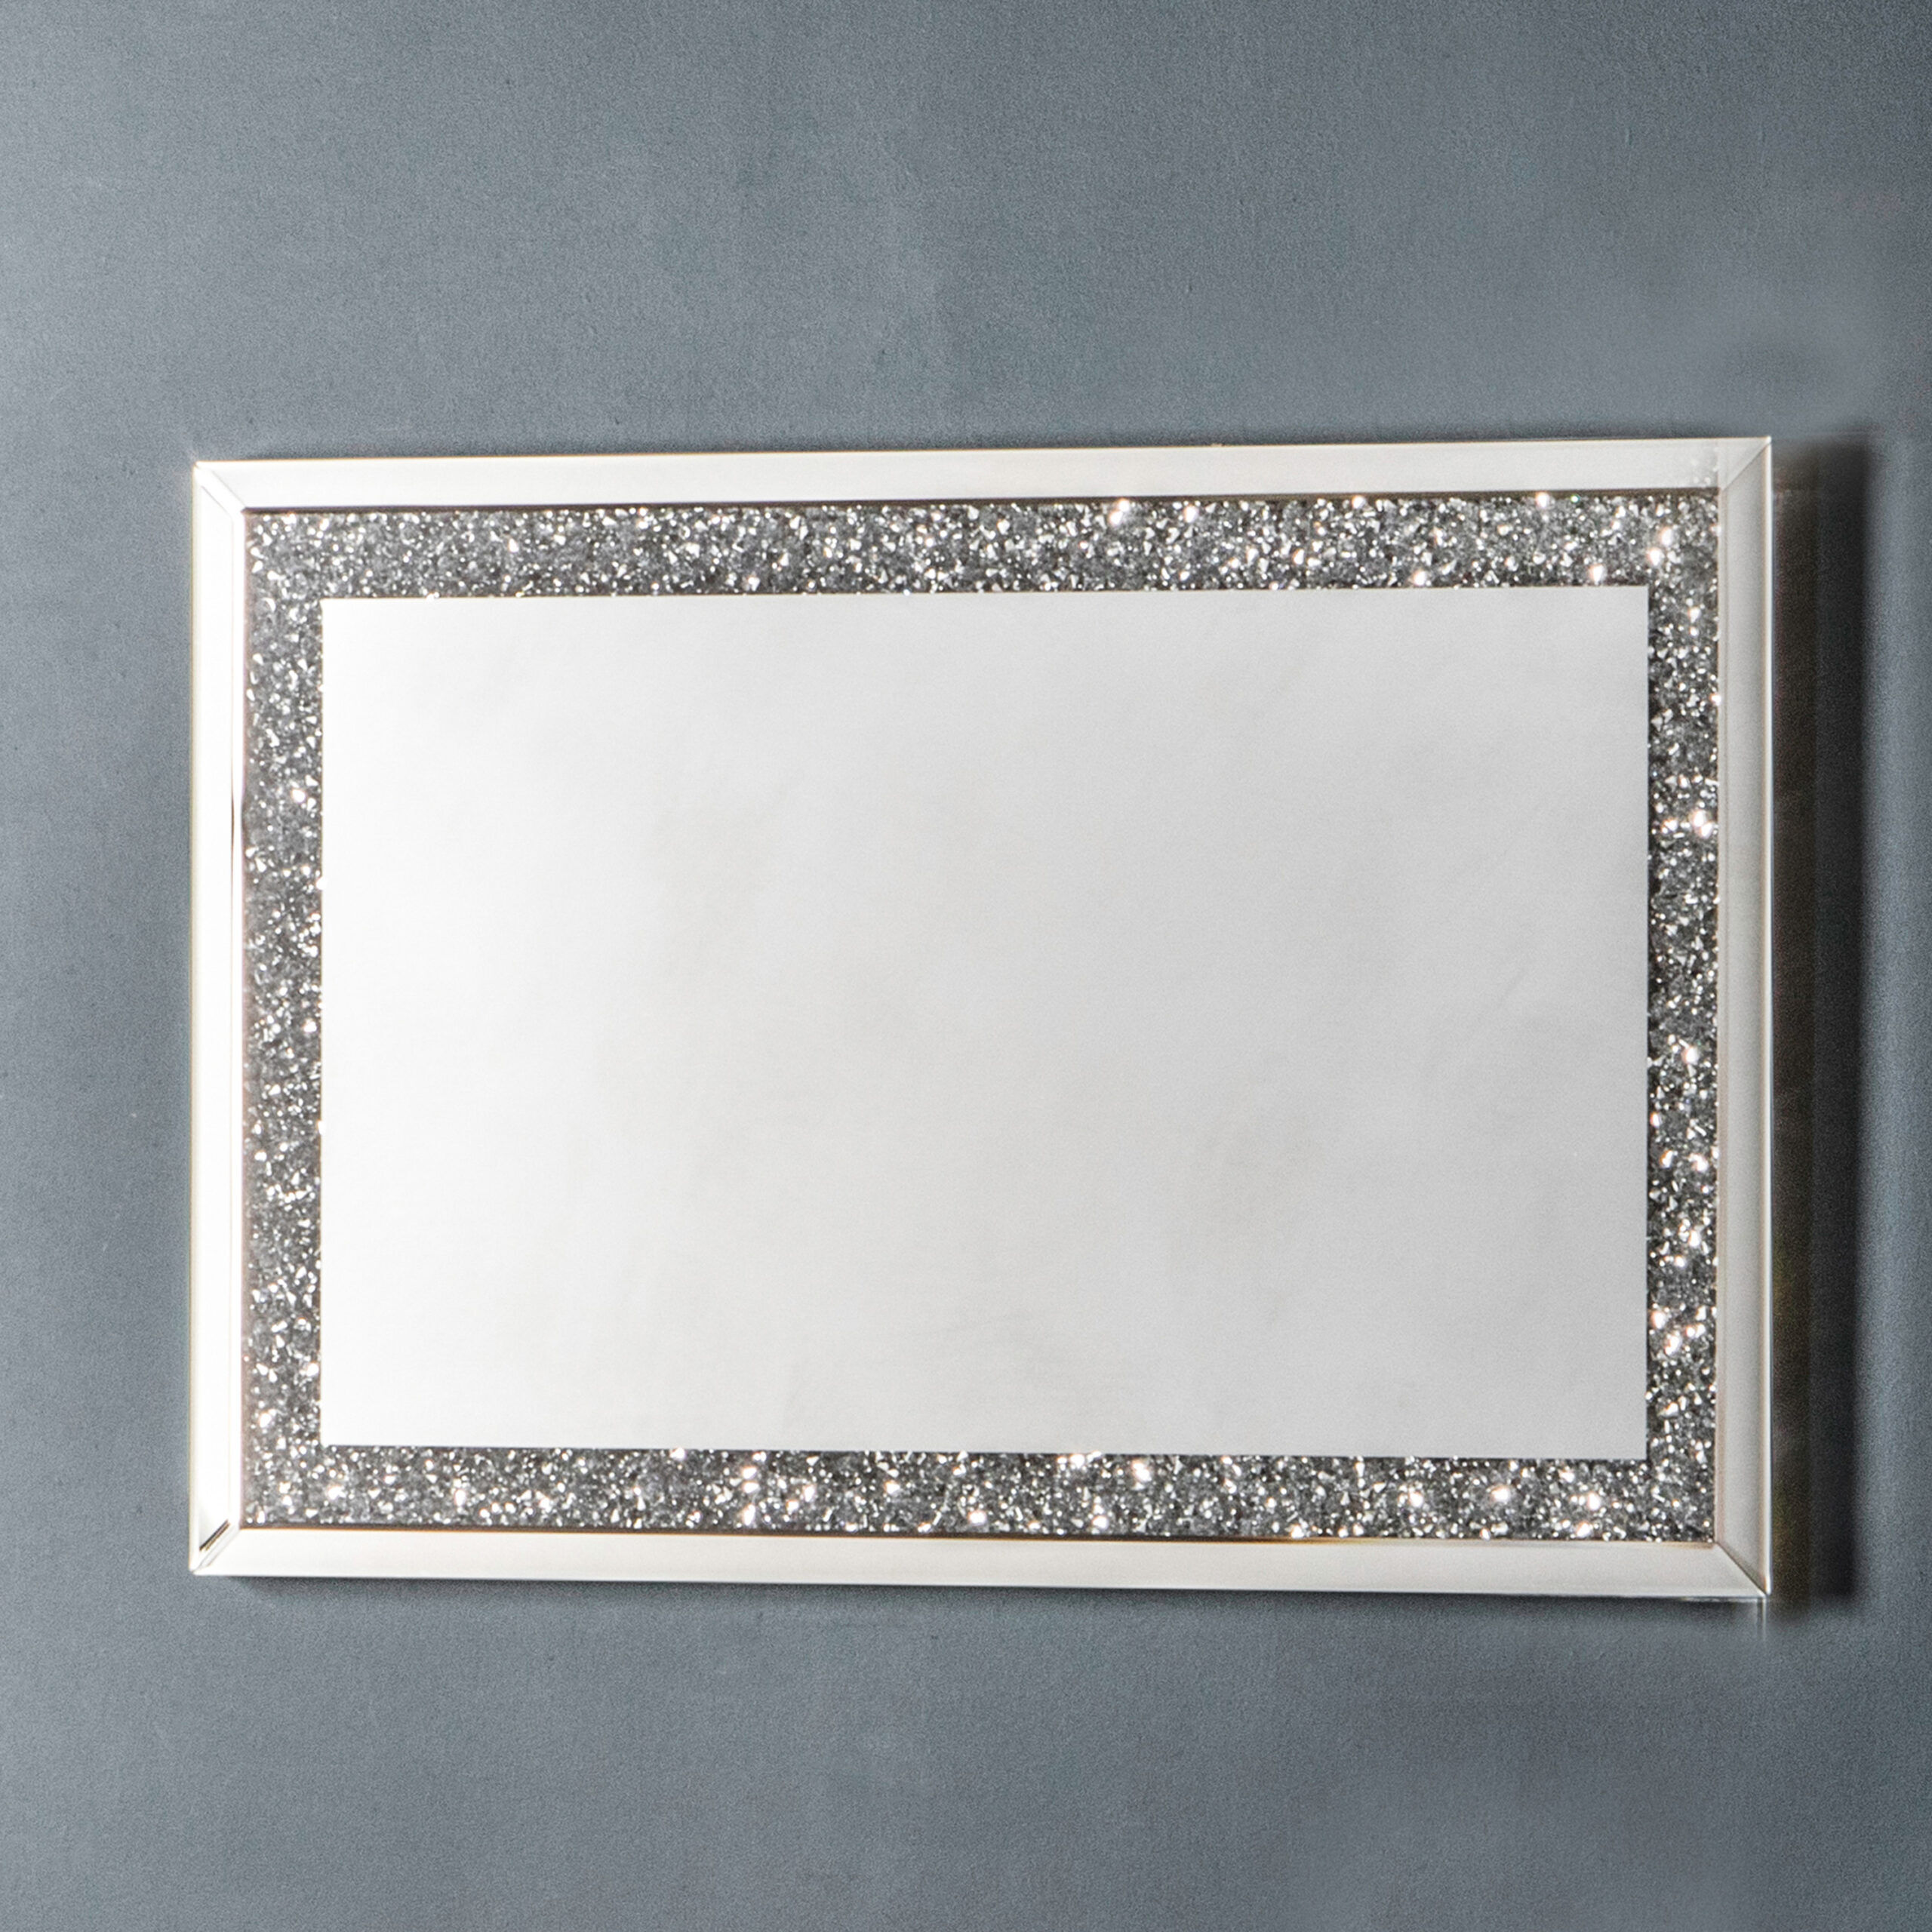 Photos - Wall Mirror Reflections Mirror Silver